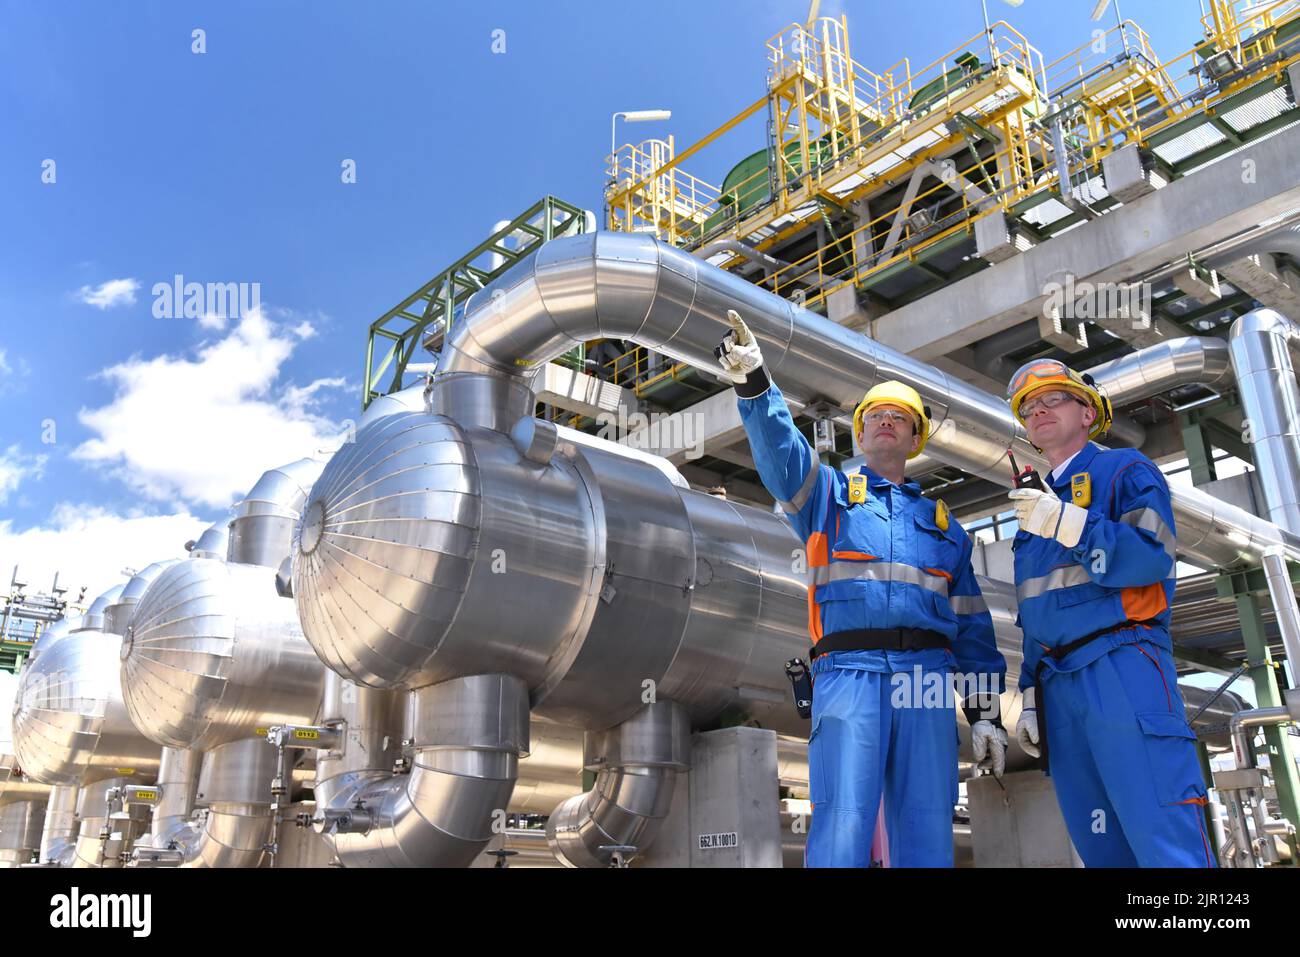 Teamarbeit: Gruppe von Industriearbeitern in einer Raffinerie - Öl verarbeitende Ausrüstung und Maschinen Stockfoto